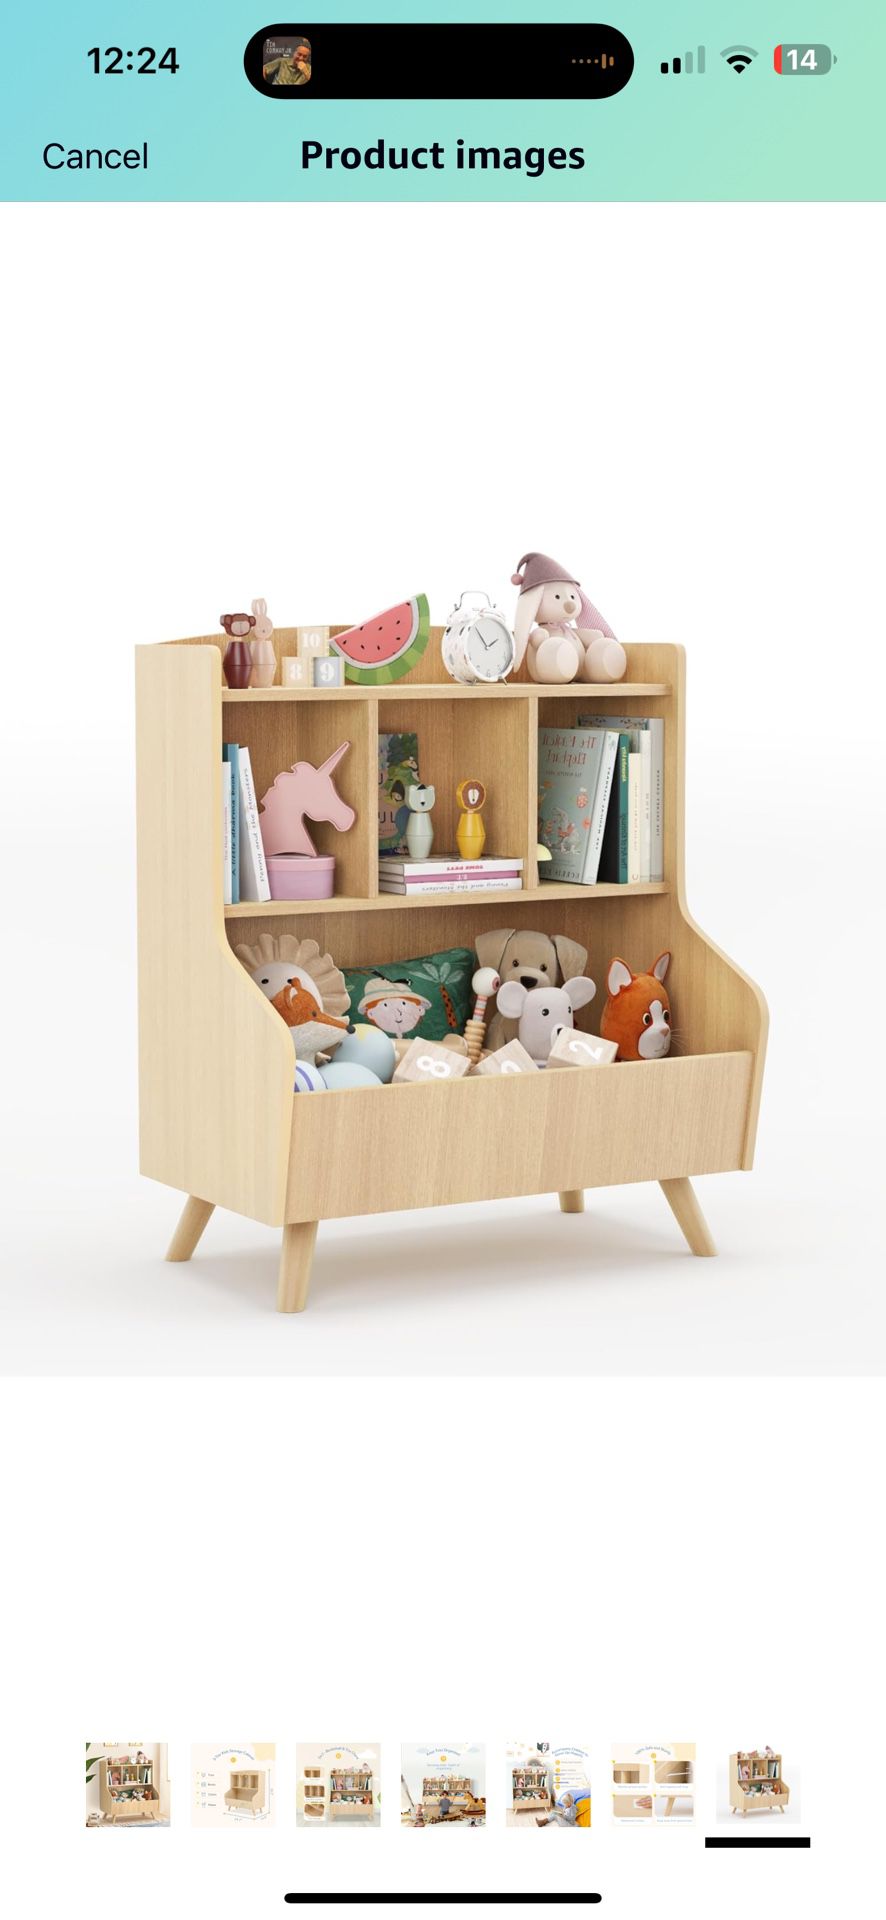 New Three Tier Kids Bookshelf With Toy Storage